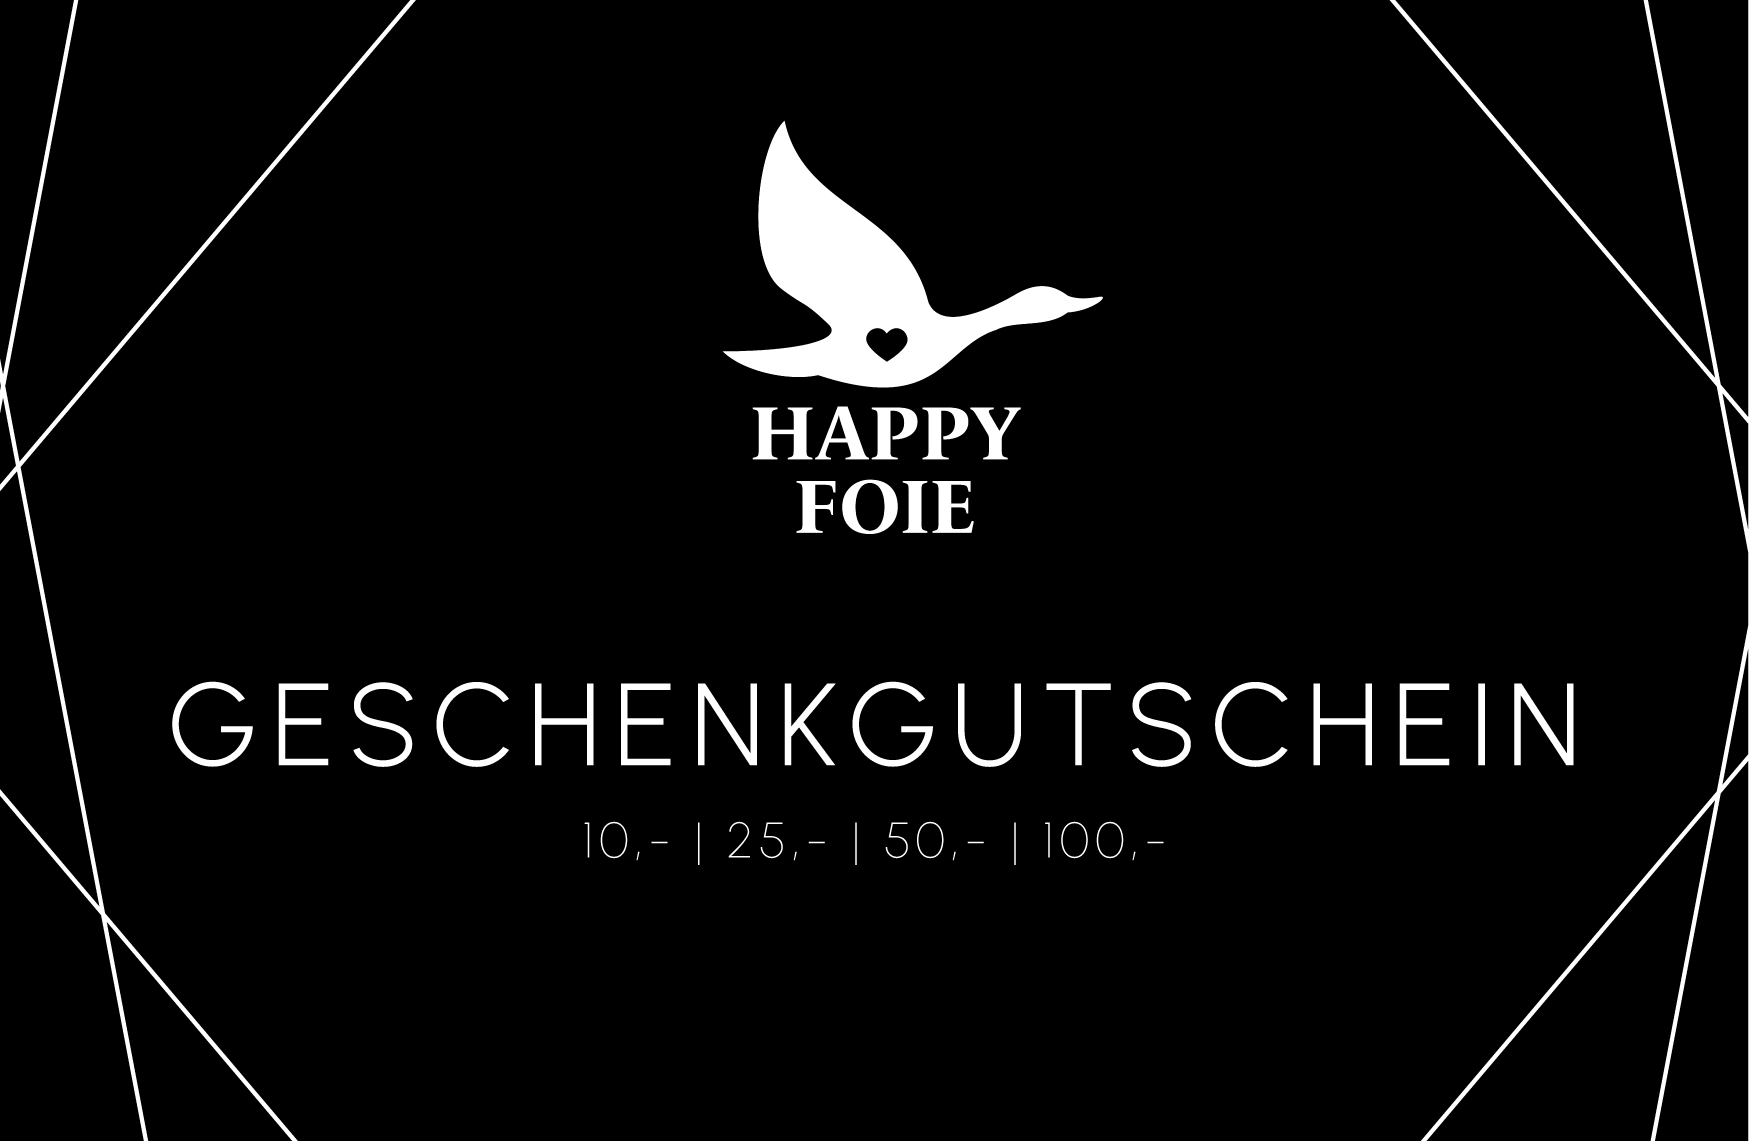 Happy Foie Geschenkgutschein - Happy Foie